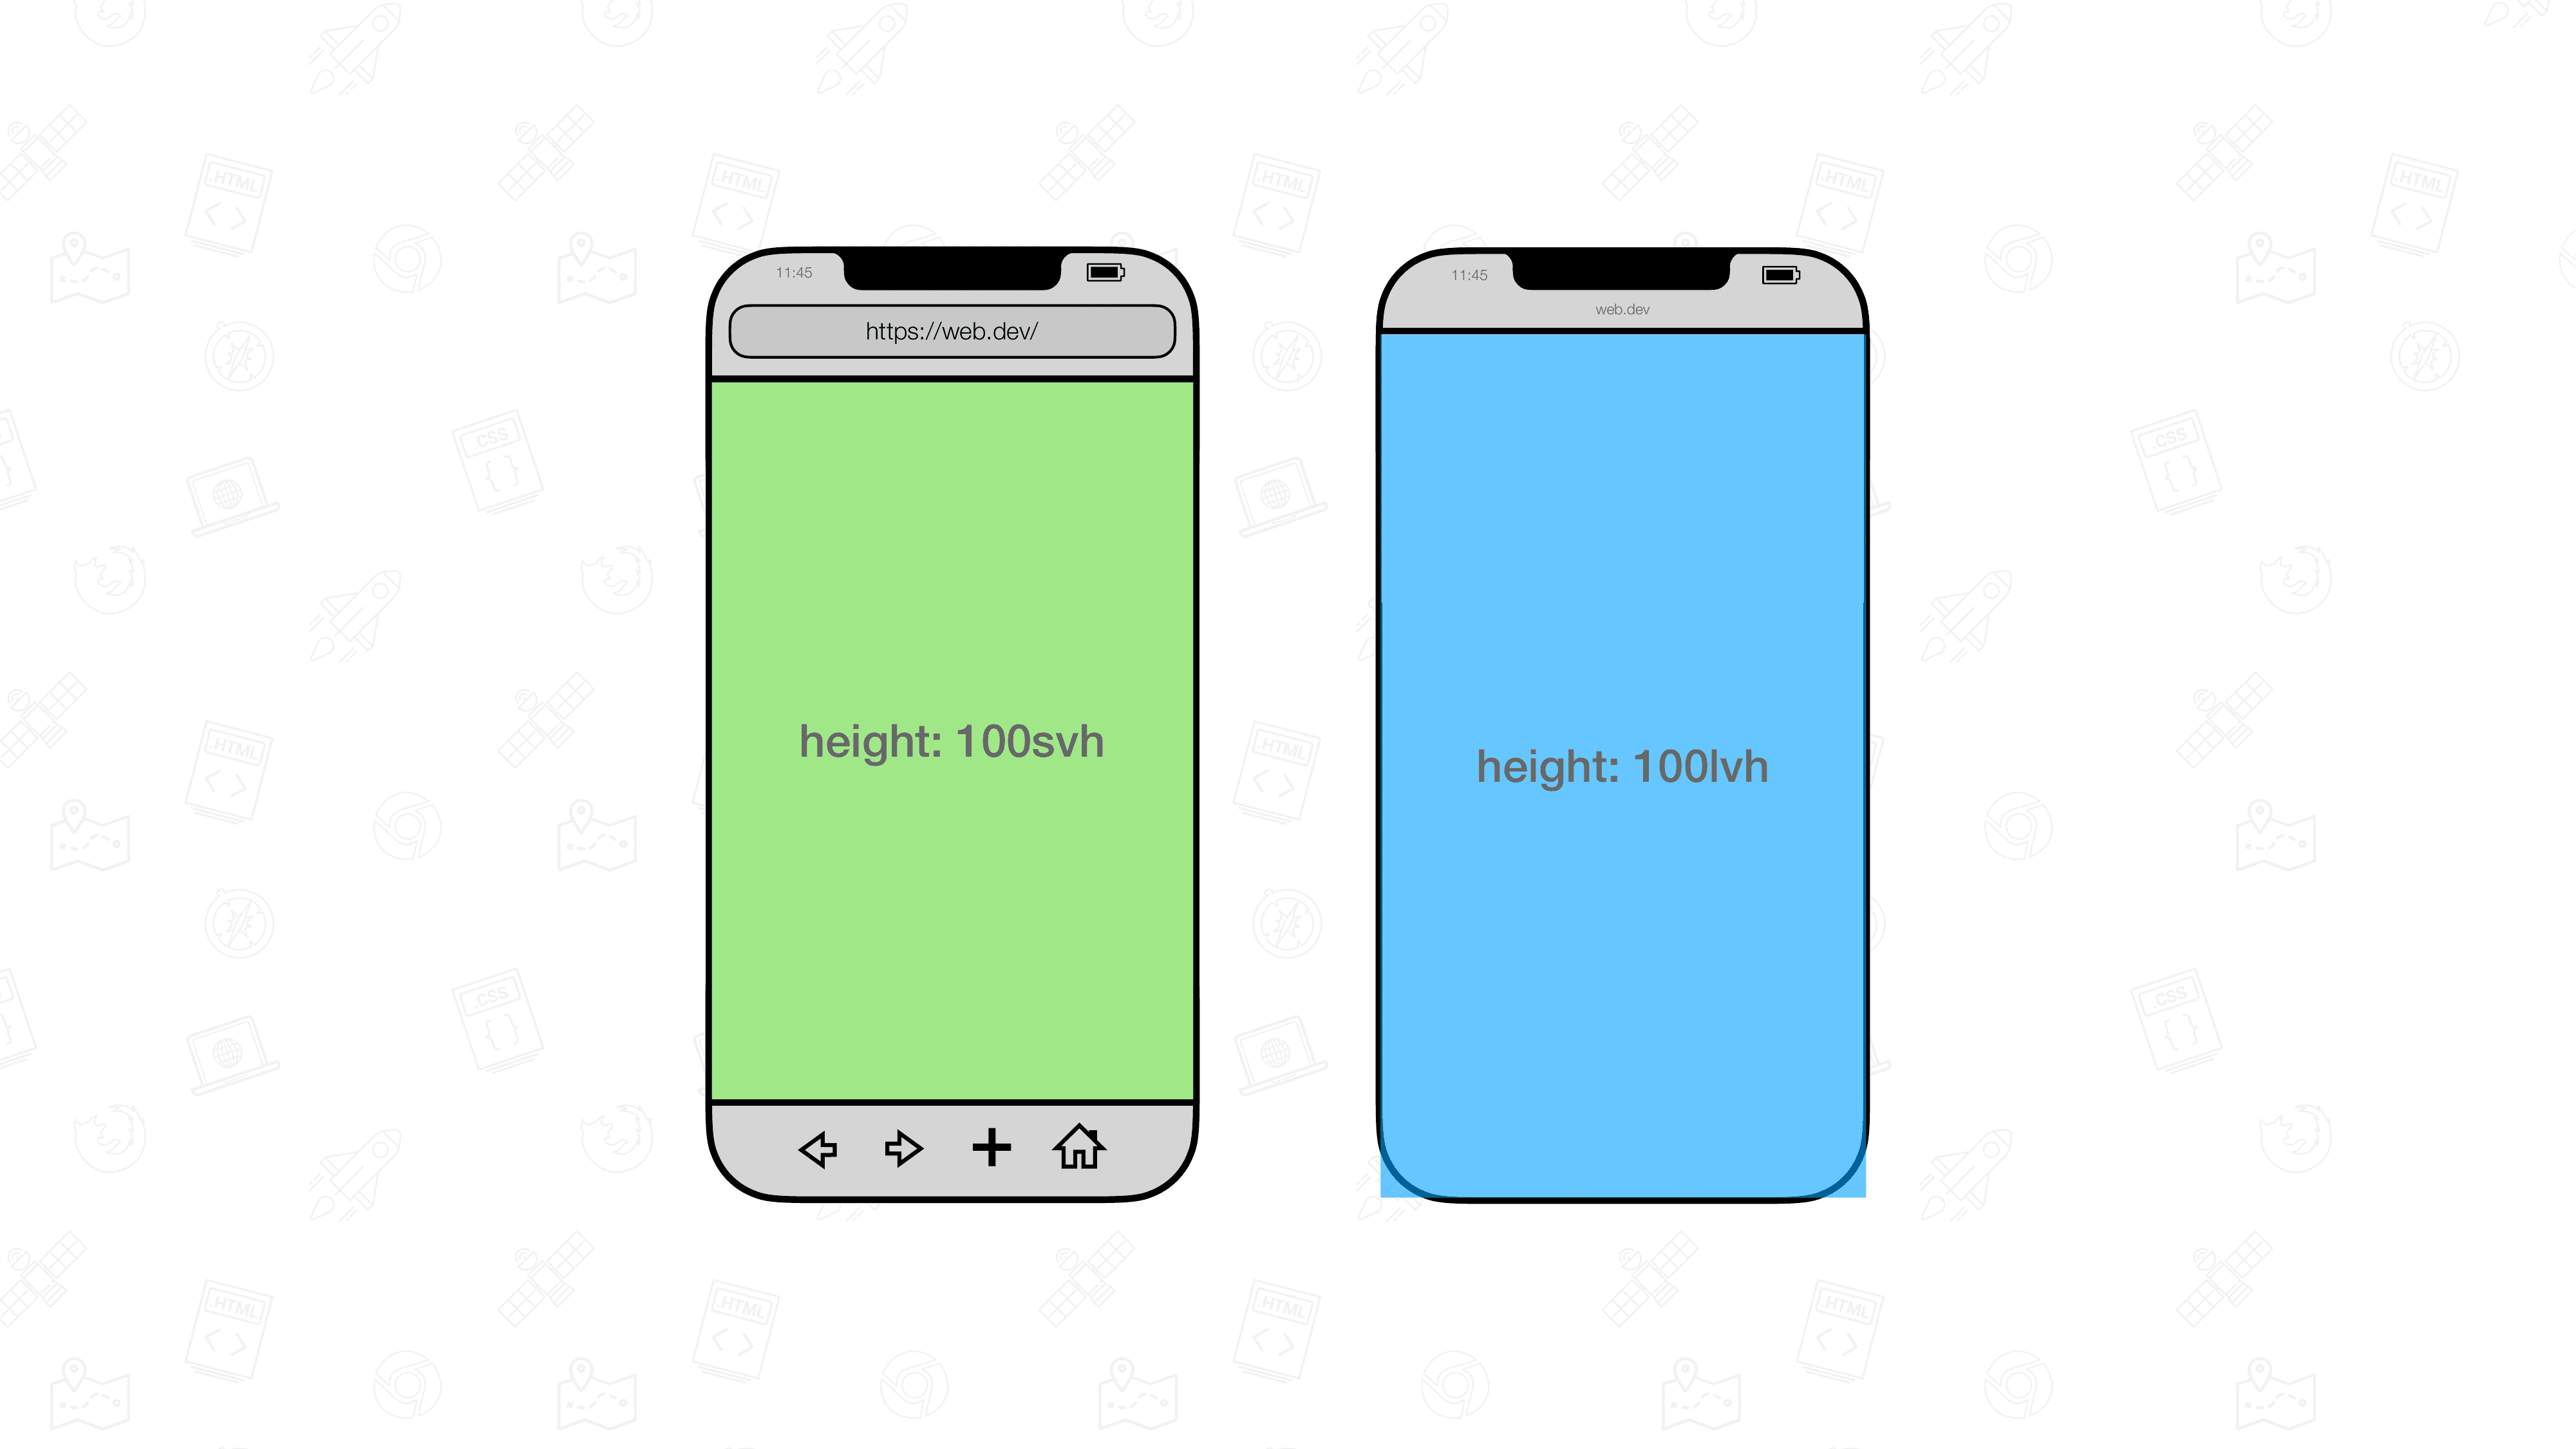 दो मोबाइल ब्राउज़र विज़ुअलाइज़ेशन, एक-दूसरे के बगल में रखे गए हैं. एक एलिमेंट का साइज़ 100svh और दूसरे का 100lvh है.